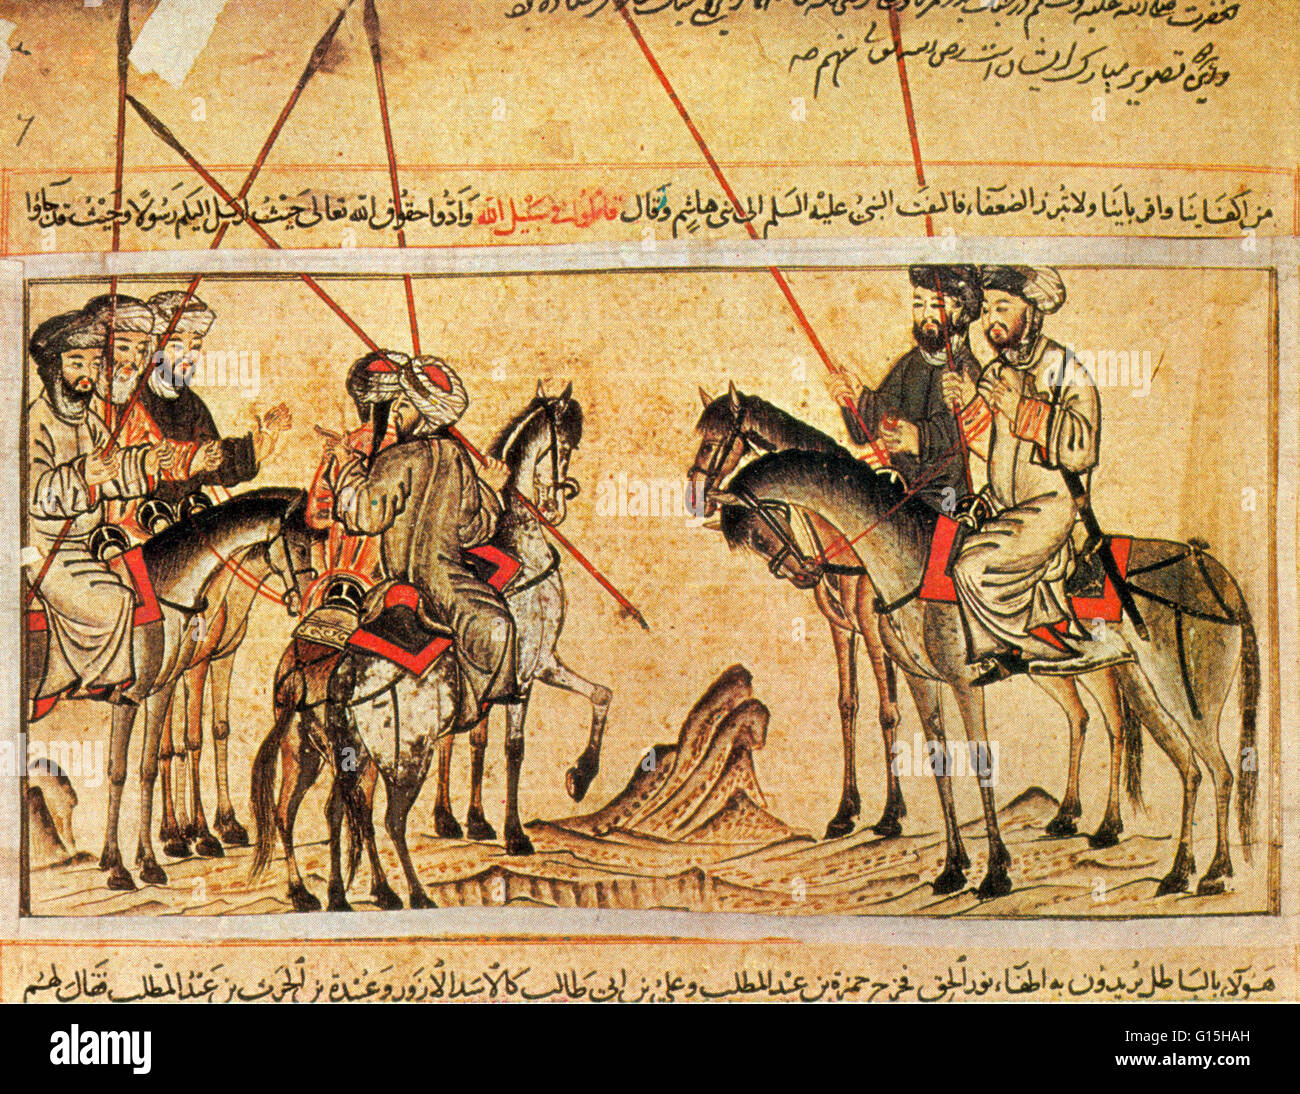 Le Jami al-Tawarikh, (l'histoire universelle) est une œuvre de la littérature et l'histoire écrite par Rashid al-Din au début du 14e siècle. Ces miniatures ont été effectuées principalement dans les rouges et bleus, qui sont parmi les meilleurs du début de l'Islam Banque D'Images